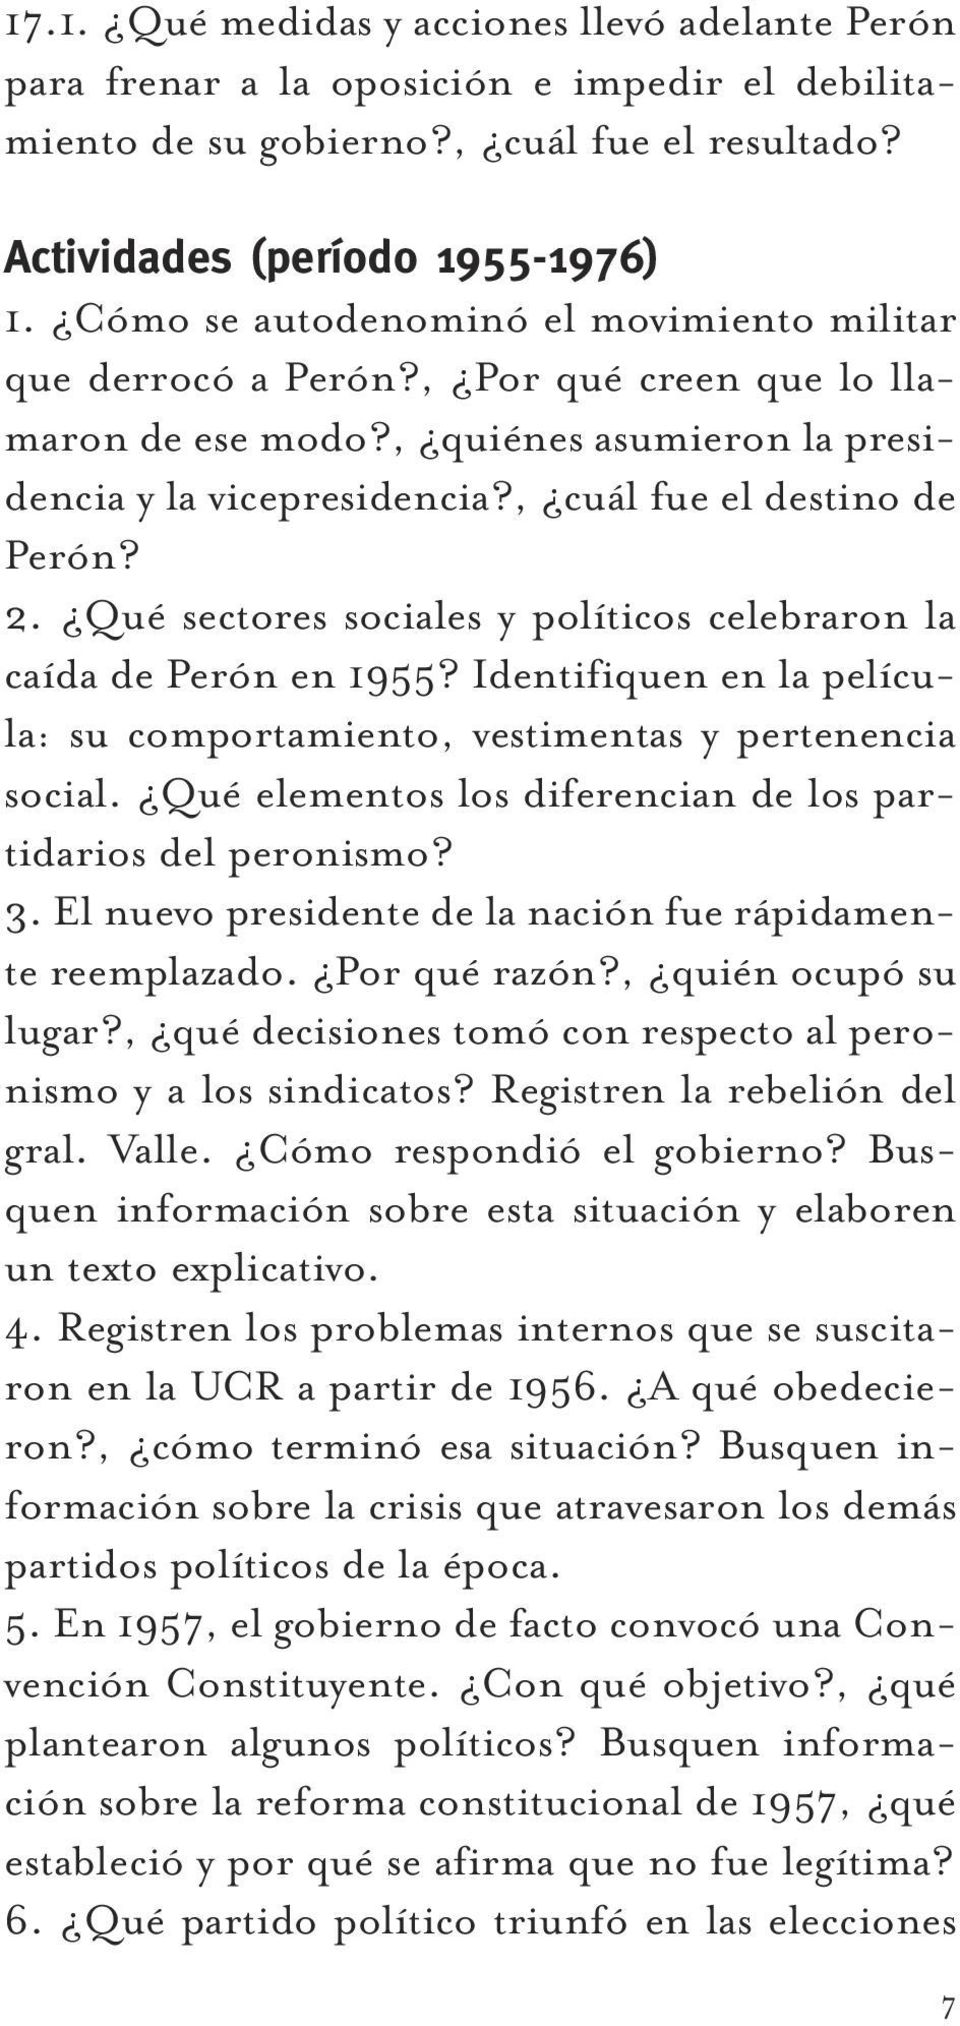 Qué sectores sociales y políticos celebraron la caída de Perón en 1955? Identifiquen en la película: su comportamiento, vestimentas y pertenencia social.